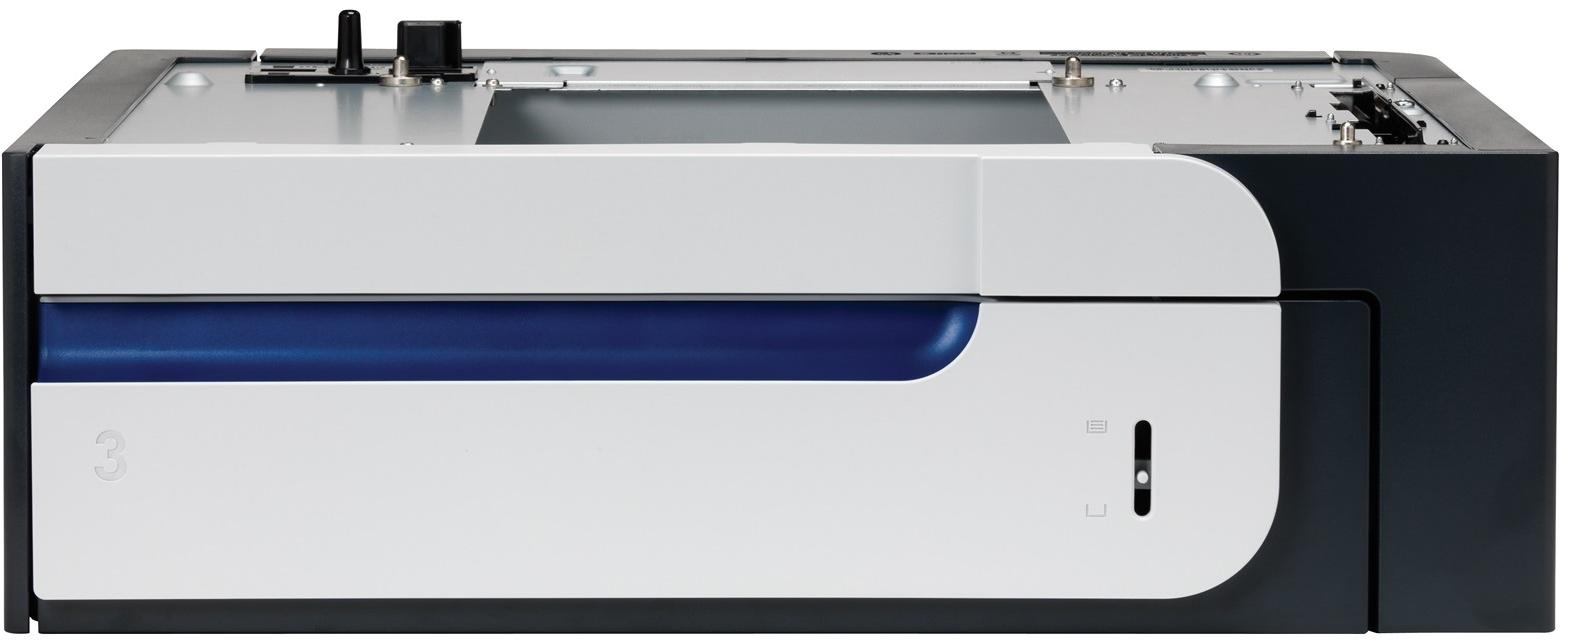 HP Color LaserJet invoerlade voor 500 vel papier en zware media